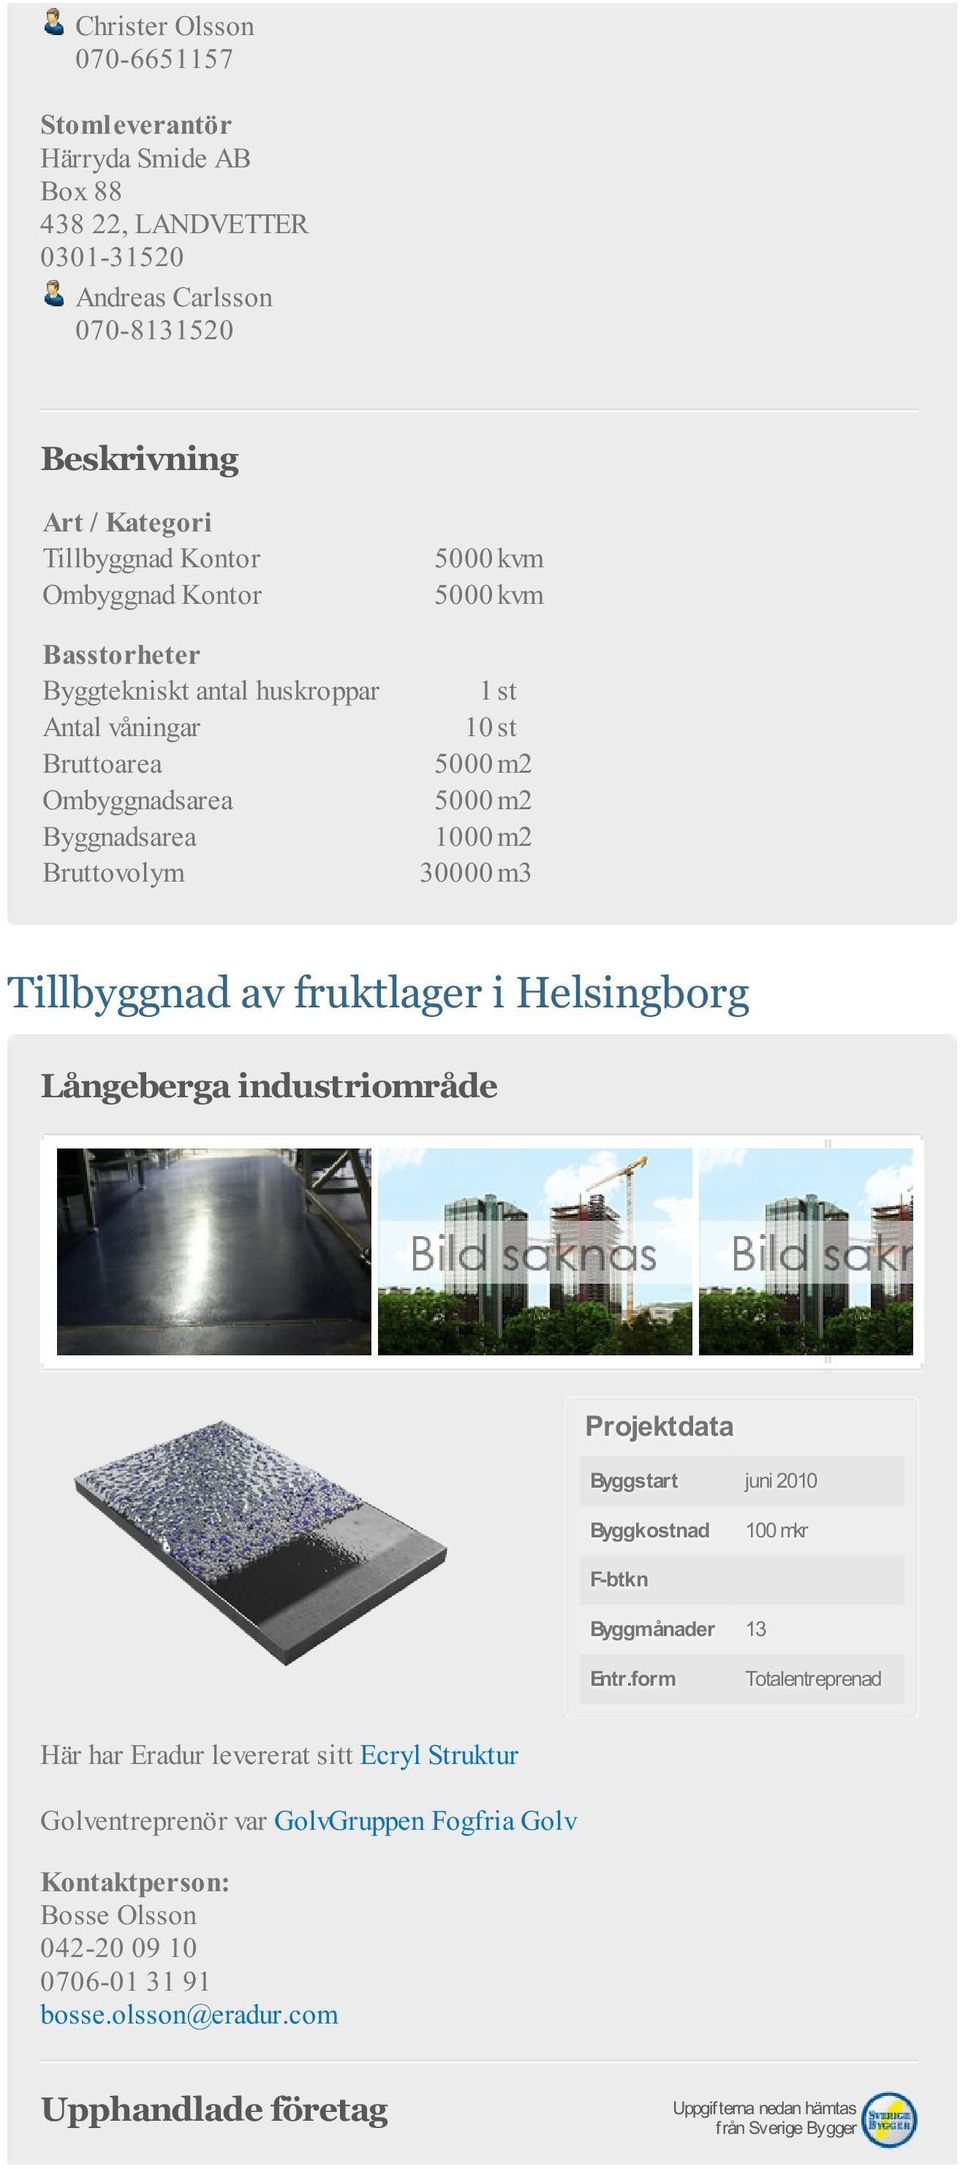 Byggnadsarea 1000 m2 Bruttovolym 30000 m3 Tillbyggnad av fruktlager i Helsingborg Långeberga industriområde Projektdata Byggstart juni 2010 100 mkr F-btkn